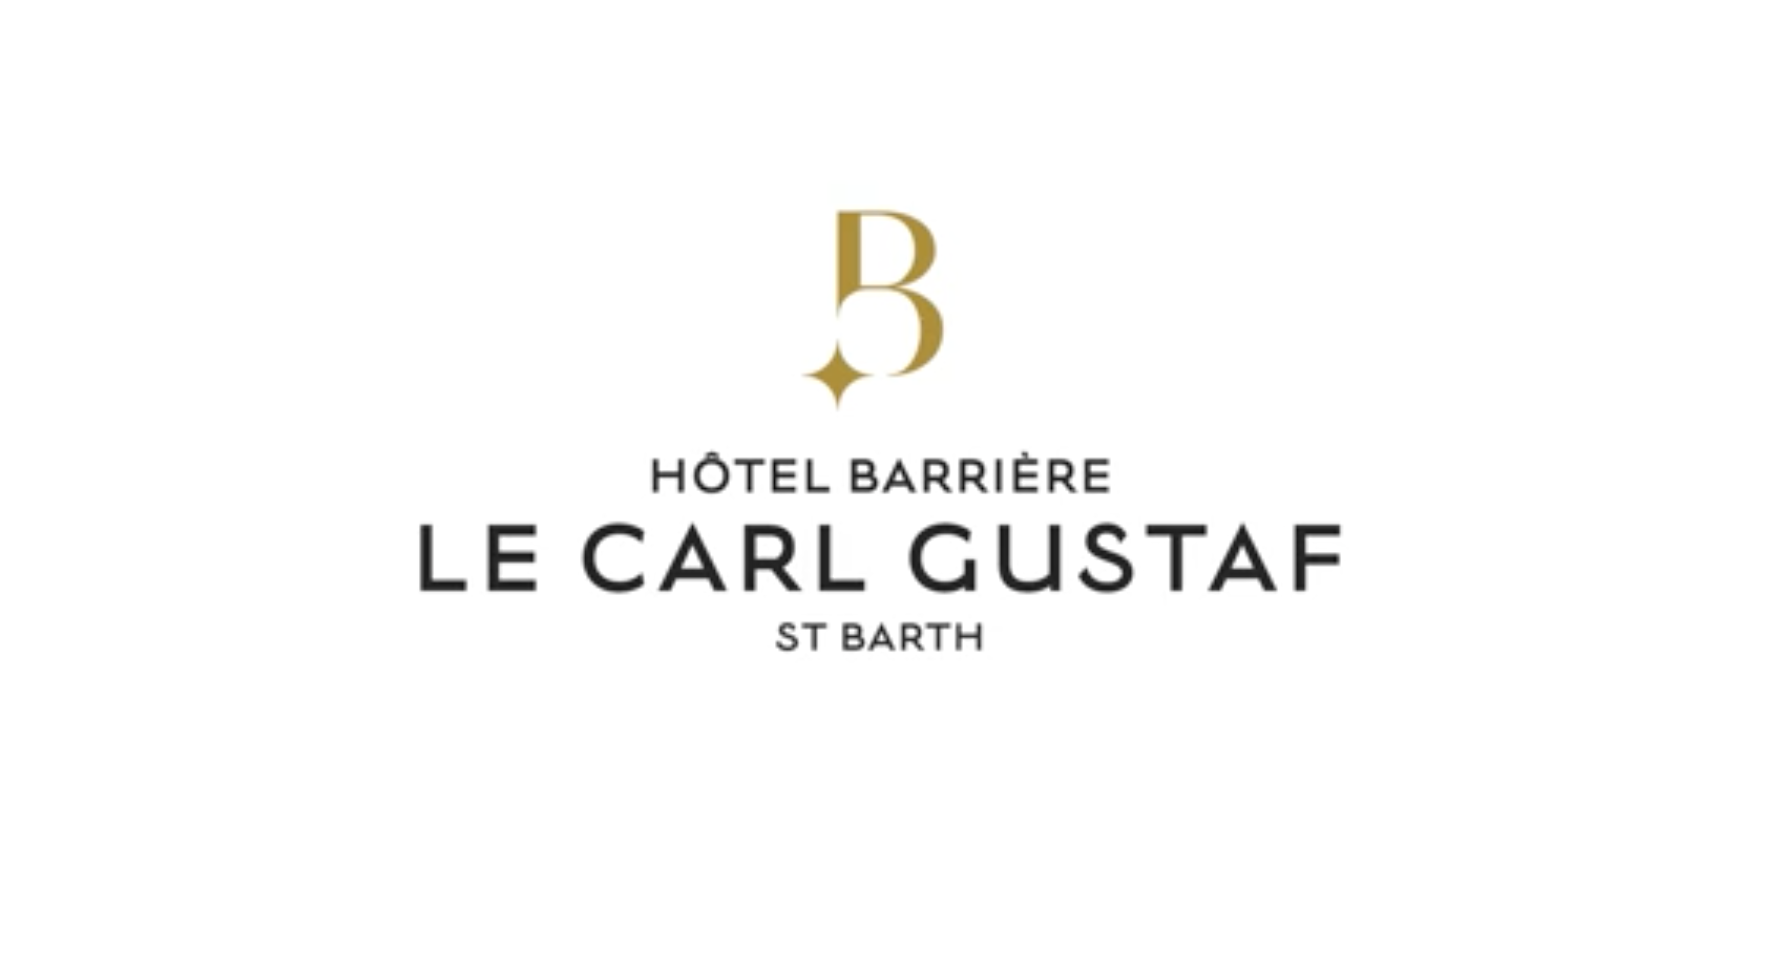 Tourisme en Outre-mer : L’Hôtel Le Carl Gustaf exploité par le groupe Barrière réouvre à Saint-Barthélémy